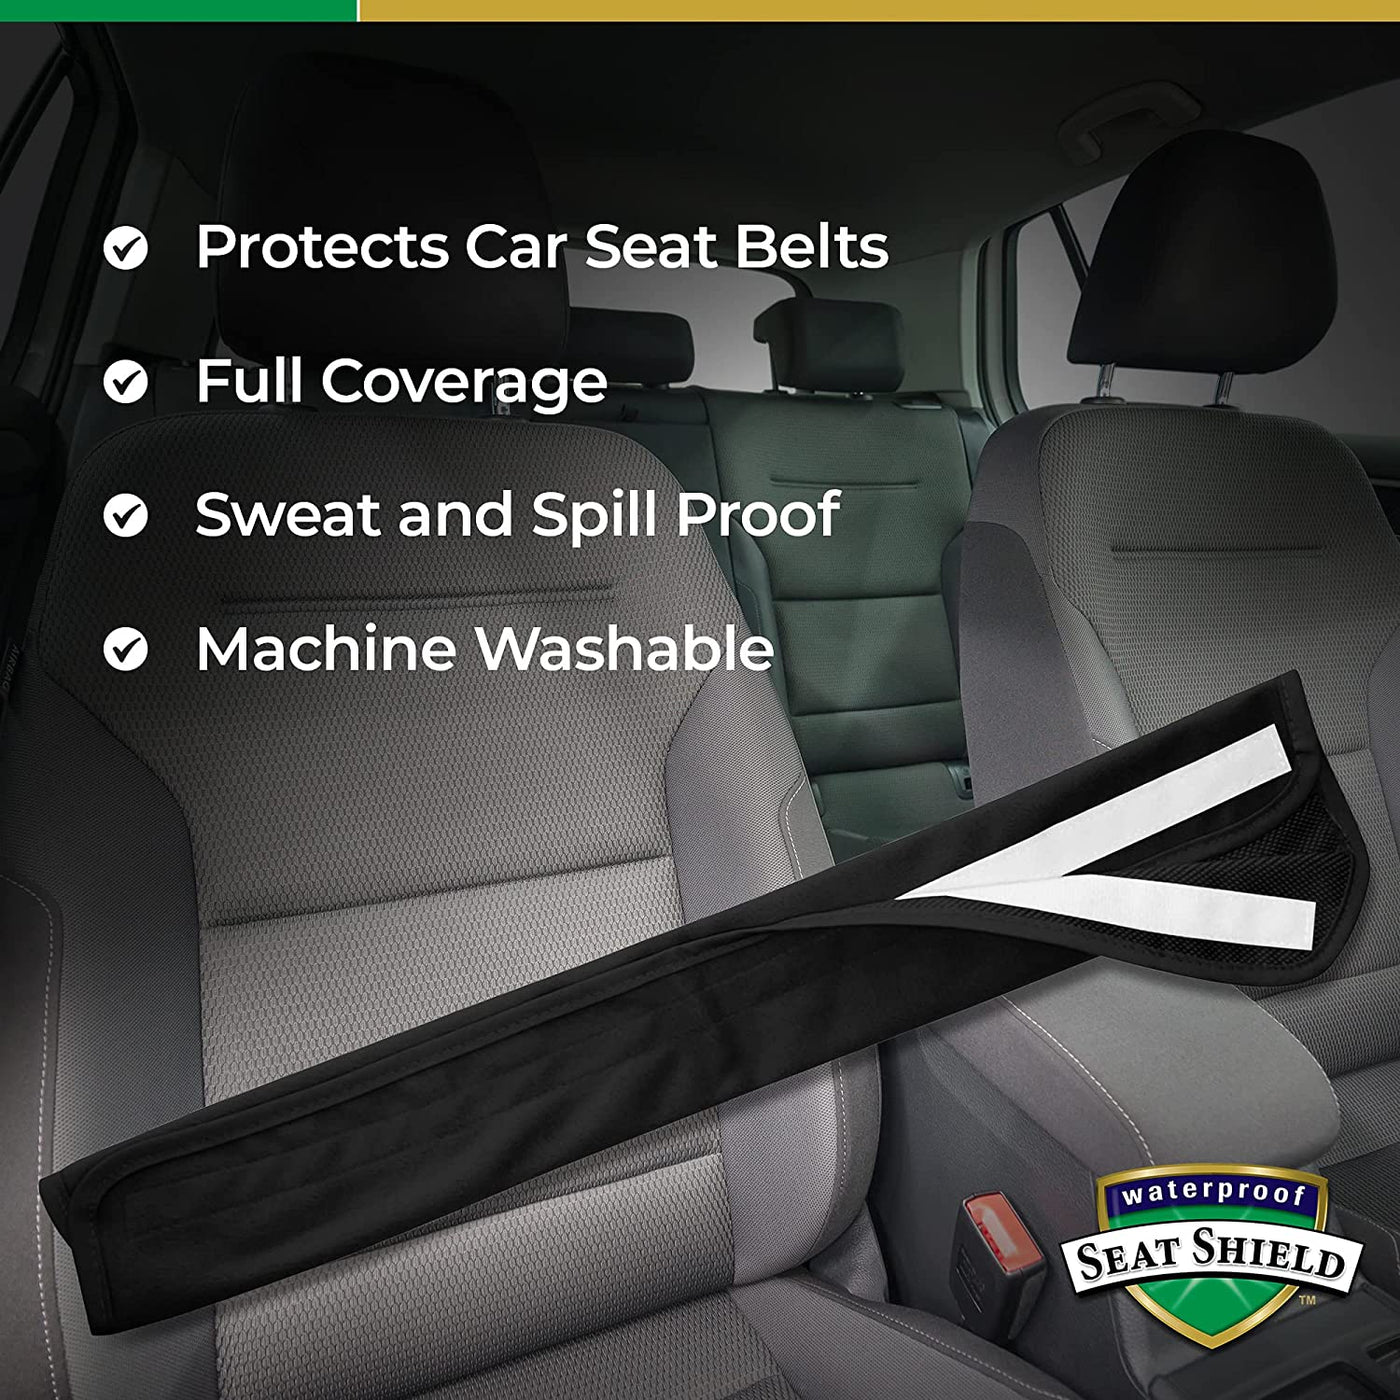 Waterproof Seat Belt Cover - Black